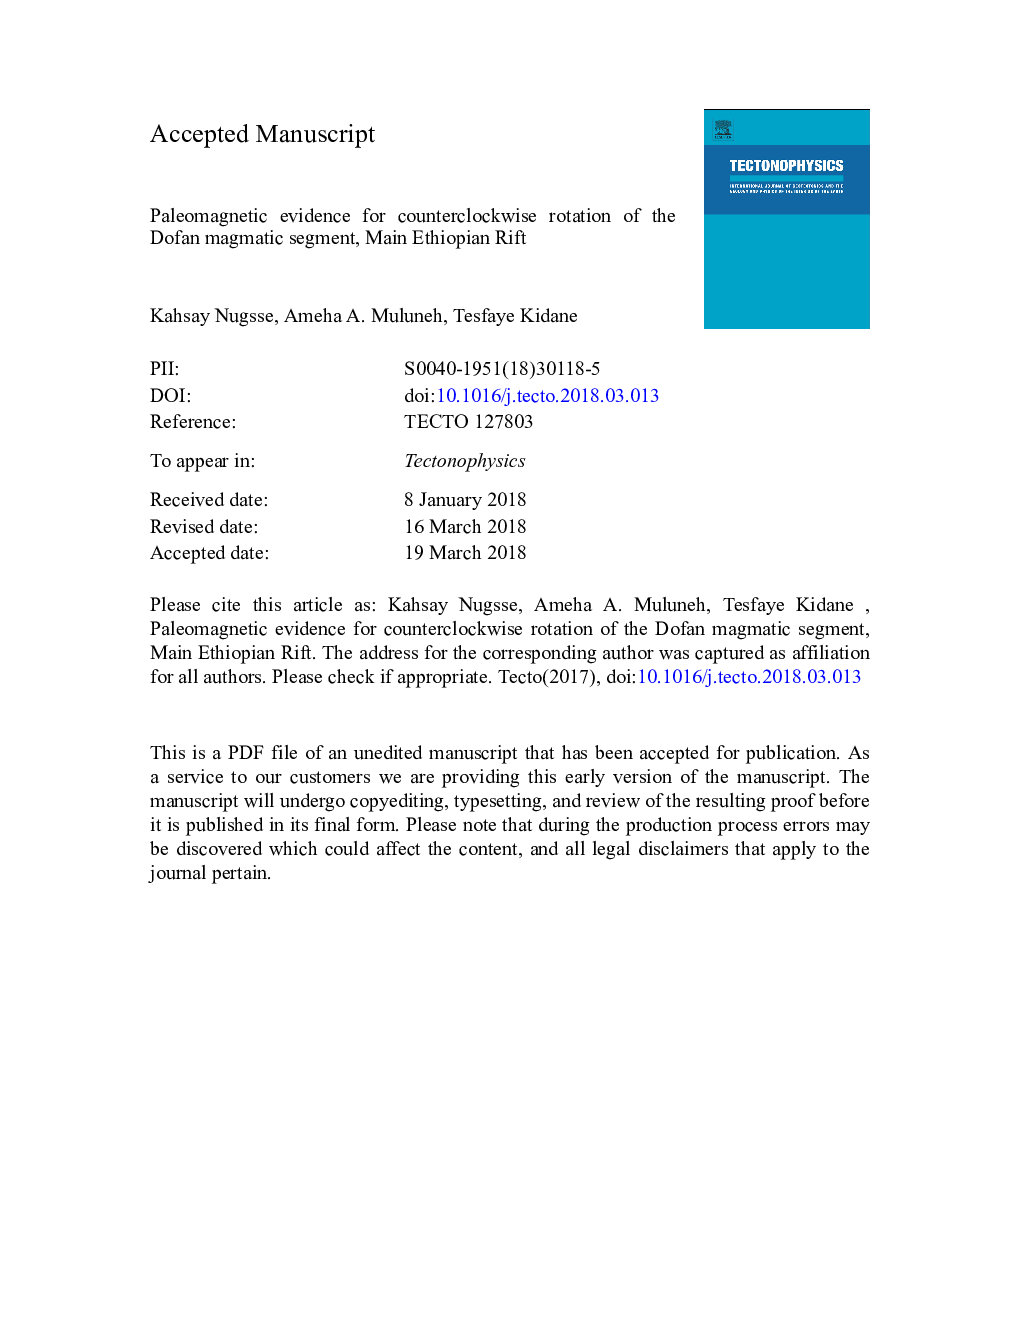 شواهد پالئومغناطیسی برای چرخش ضد گردان بخش مغناطیسی دافان، ریت اتیوپی اصلی